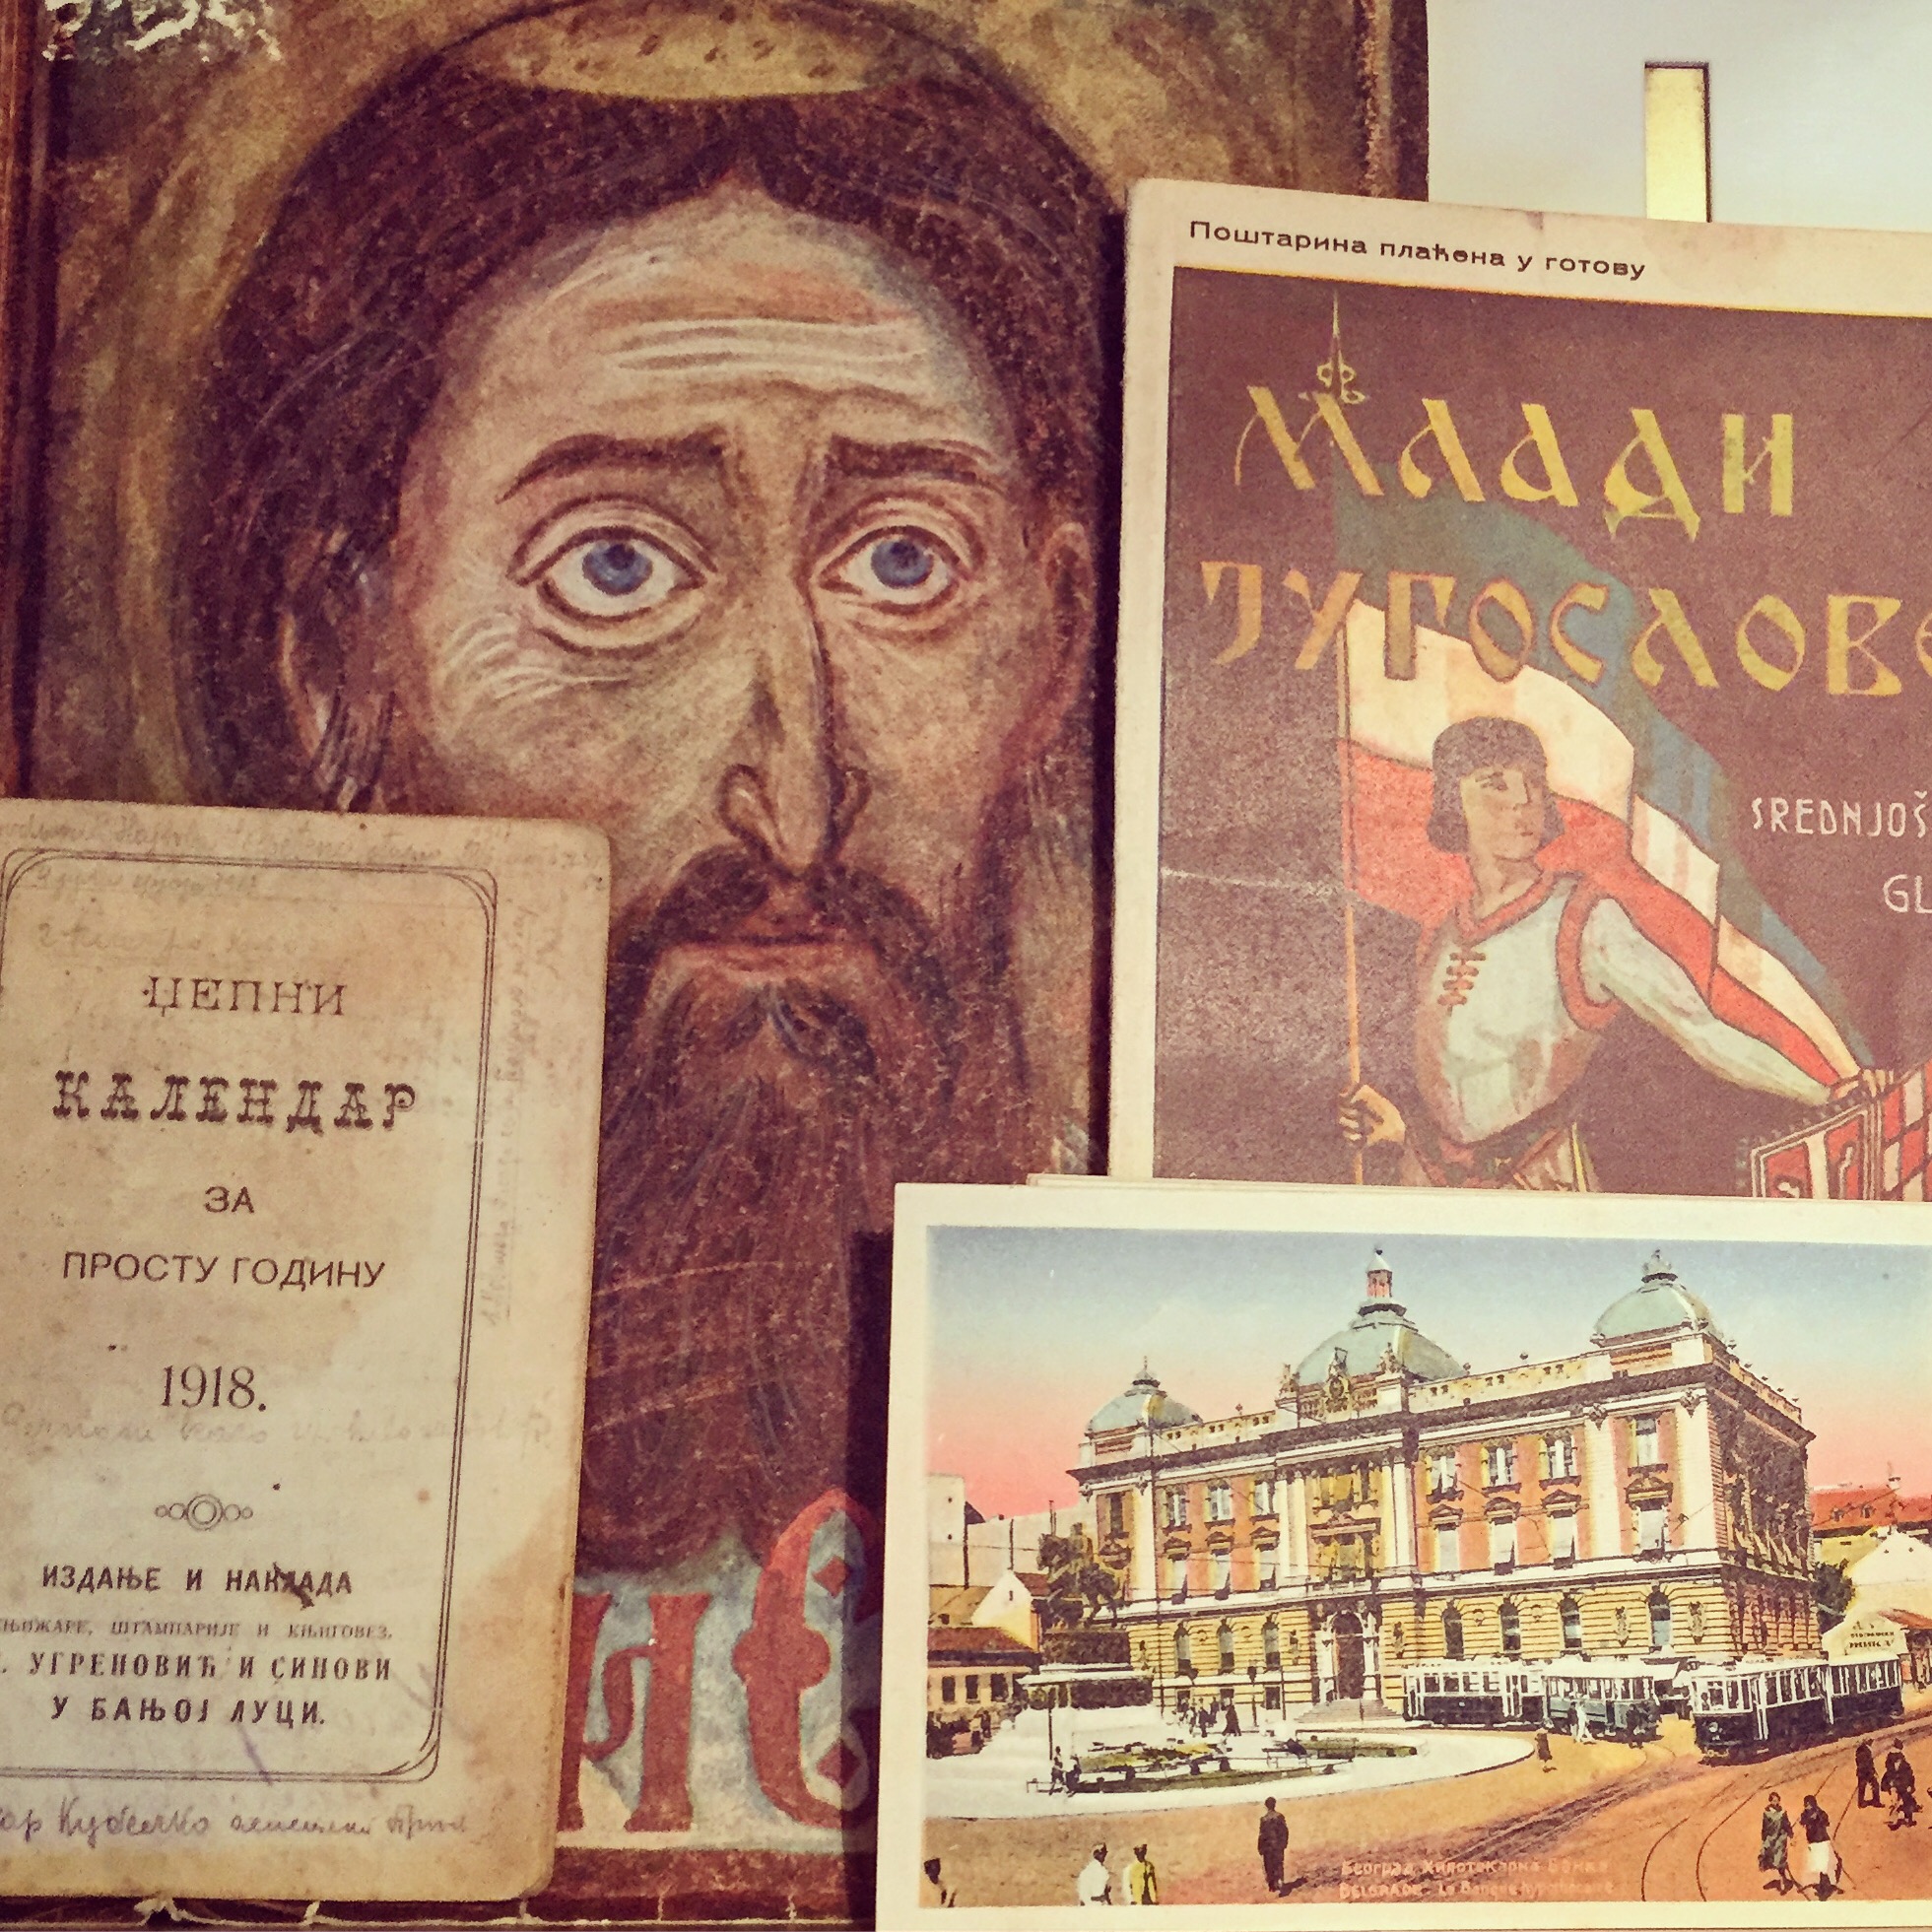 Stare knjige i stari Beograd. Narodni muzej